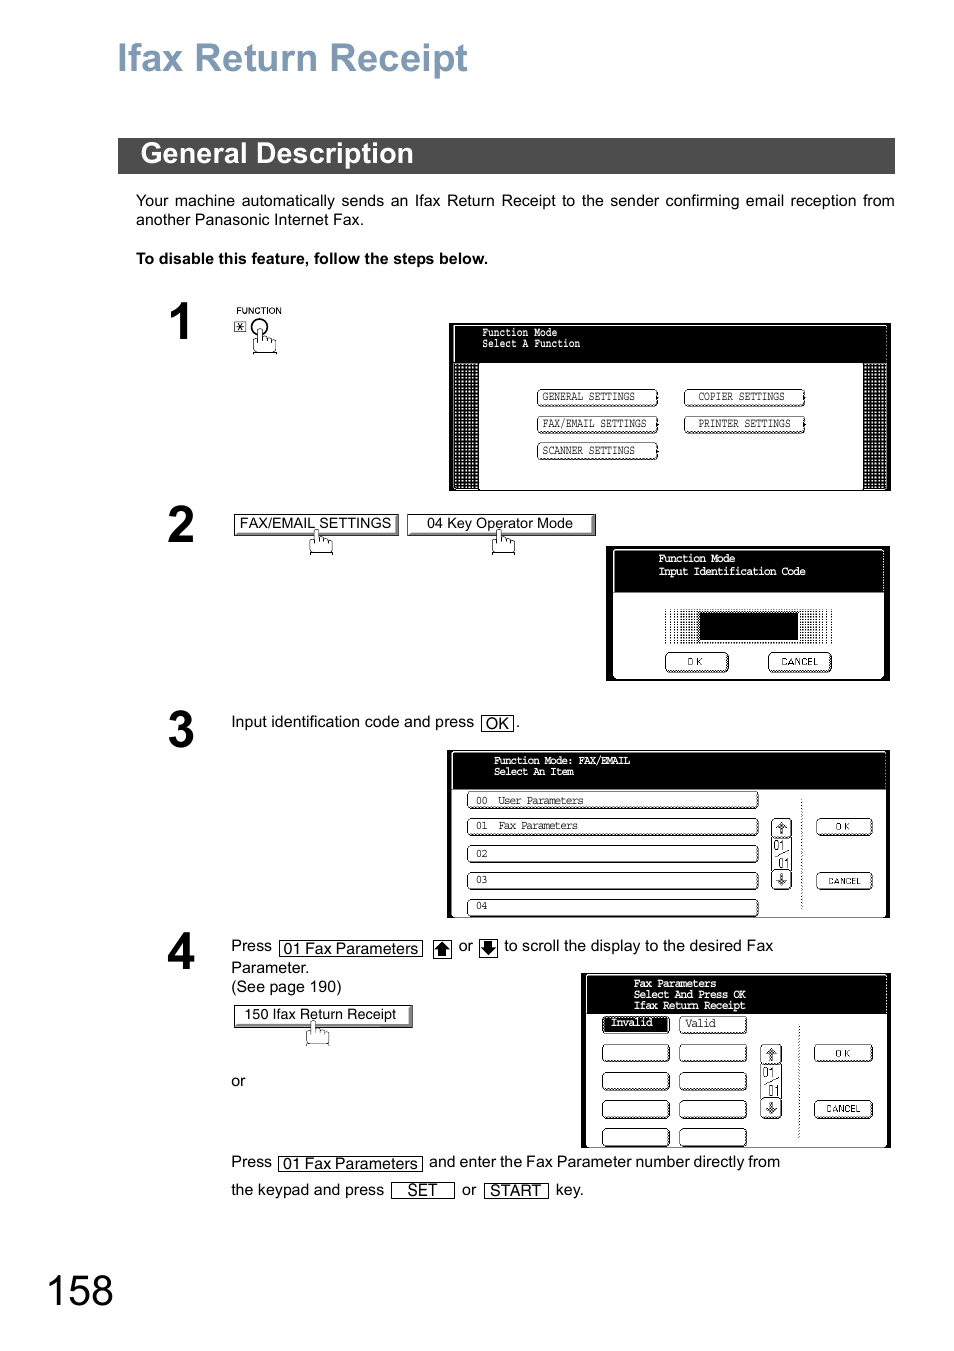 Ifax return receipt, General description | Panasonic DP-3010 Manuel d'utilisation | Page 158 / 234